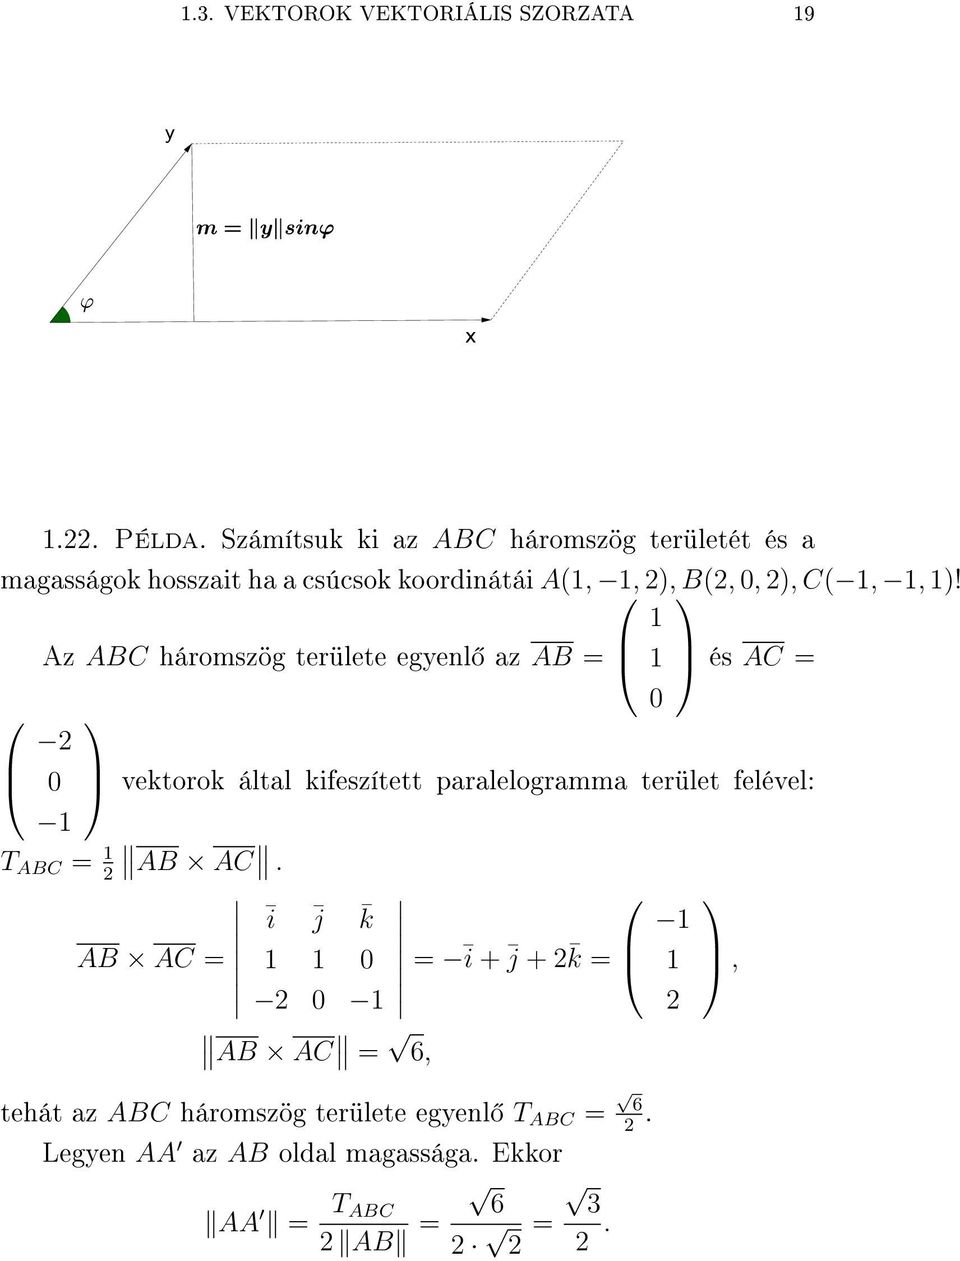 Az ABC háromszög területe egyenl az AB = és AC = vektorok által kifeszített paralelogramma terület